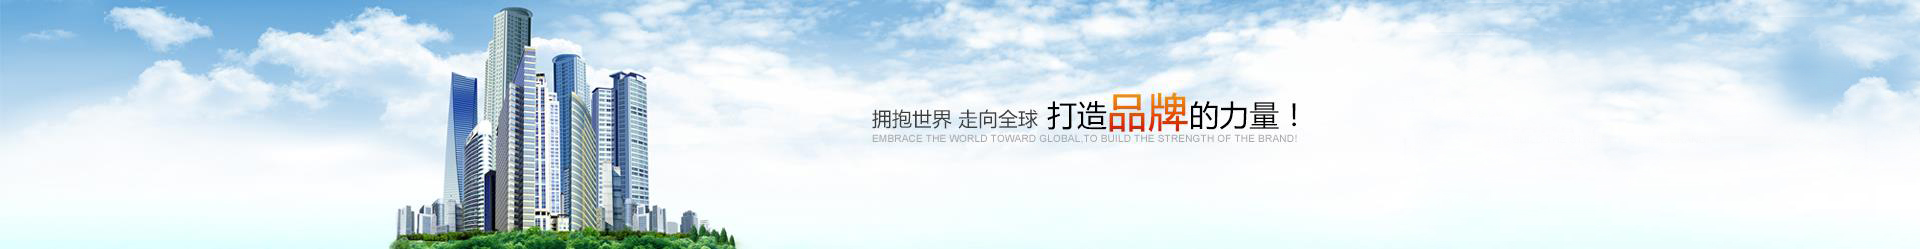 尊龙凯时-人生就是搏!「CHINA」官方网站_image1524